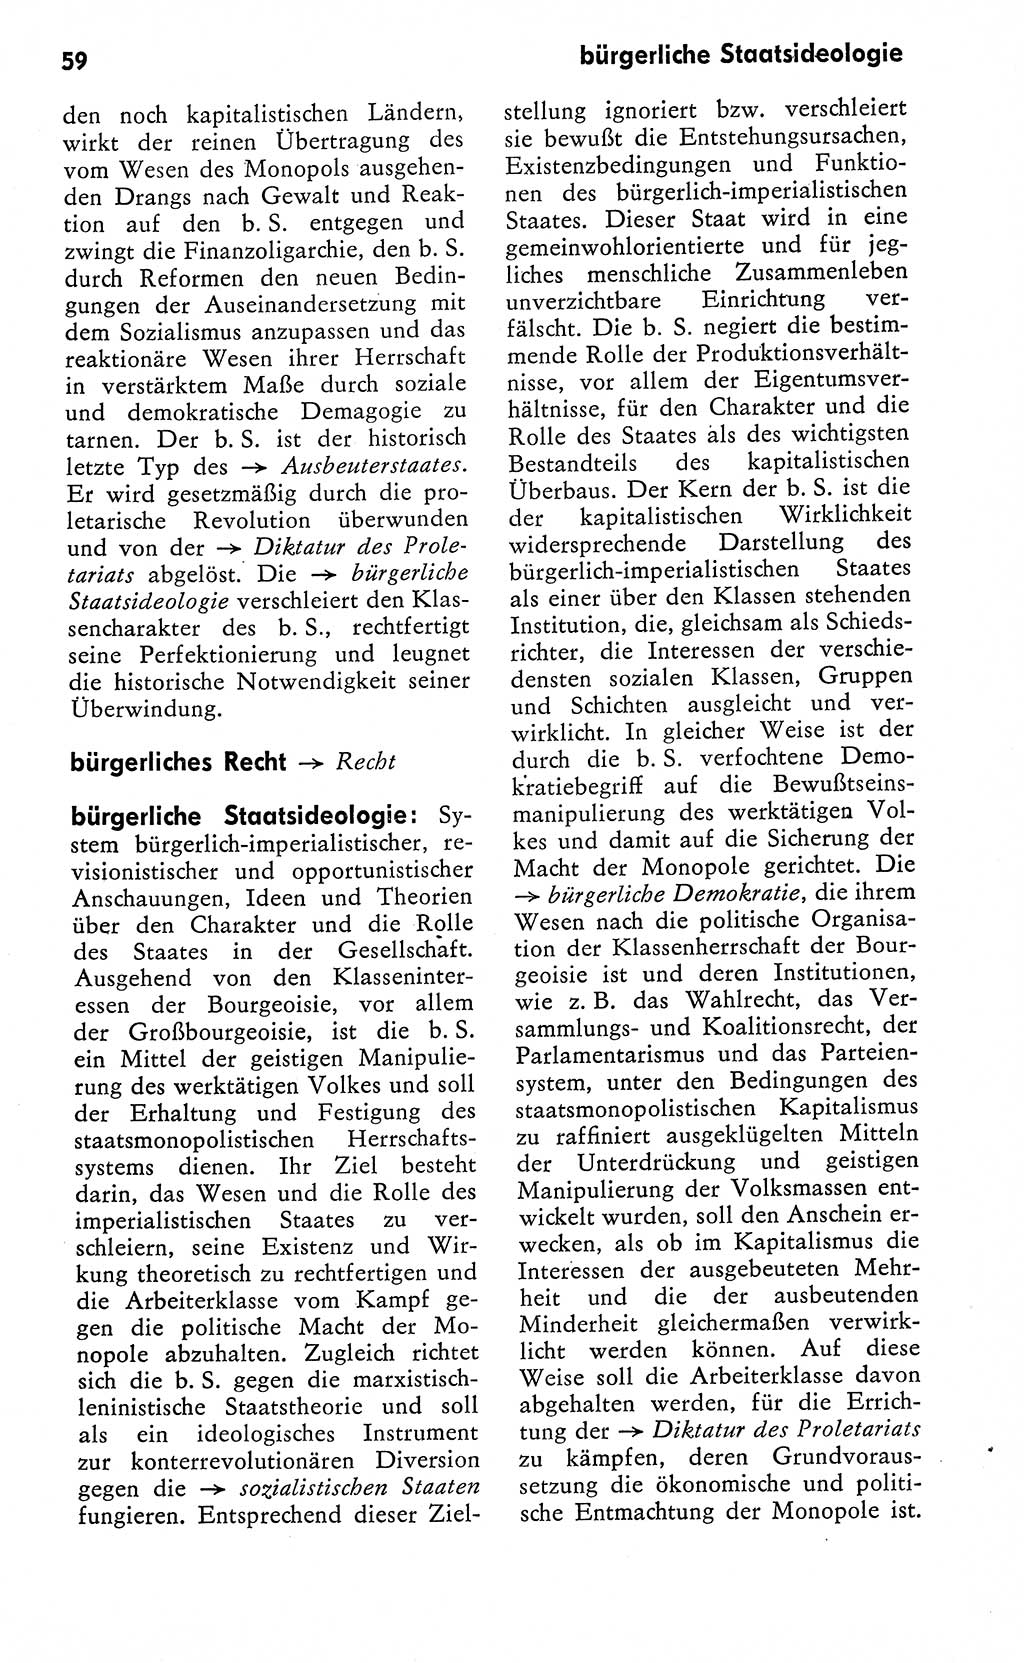 Wörterbuch zum sozialistischen Staat [Deutsche Demokratische Republik (DDR)] 1974, Seite 59 (Wb. soz. St. DDR 1974, S. 59)